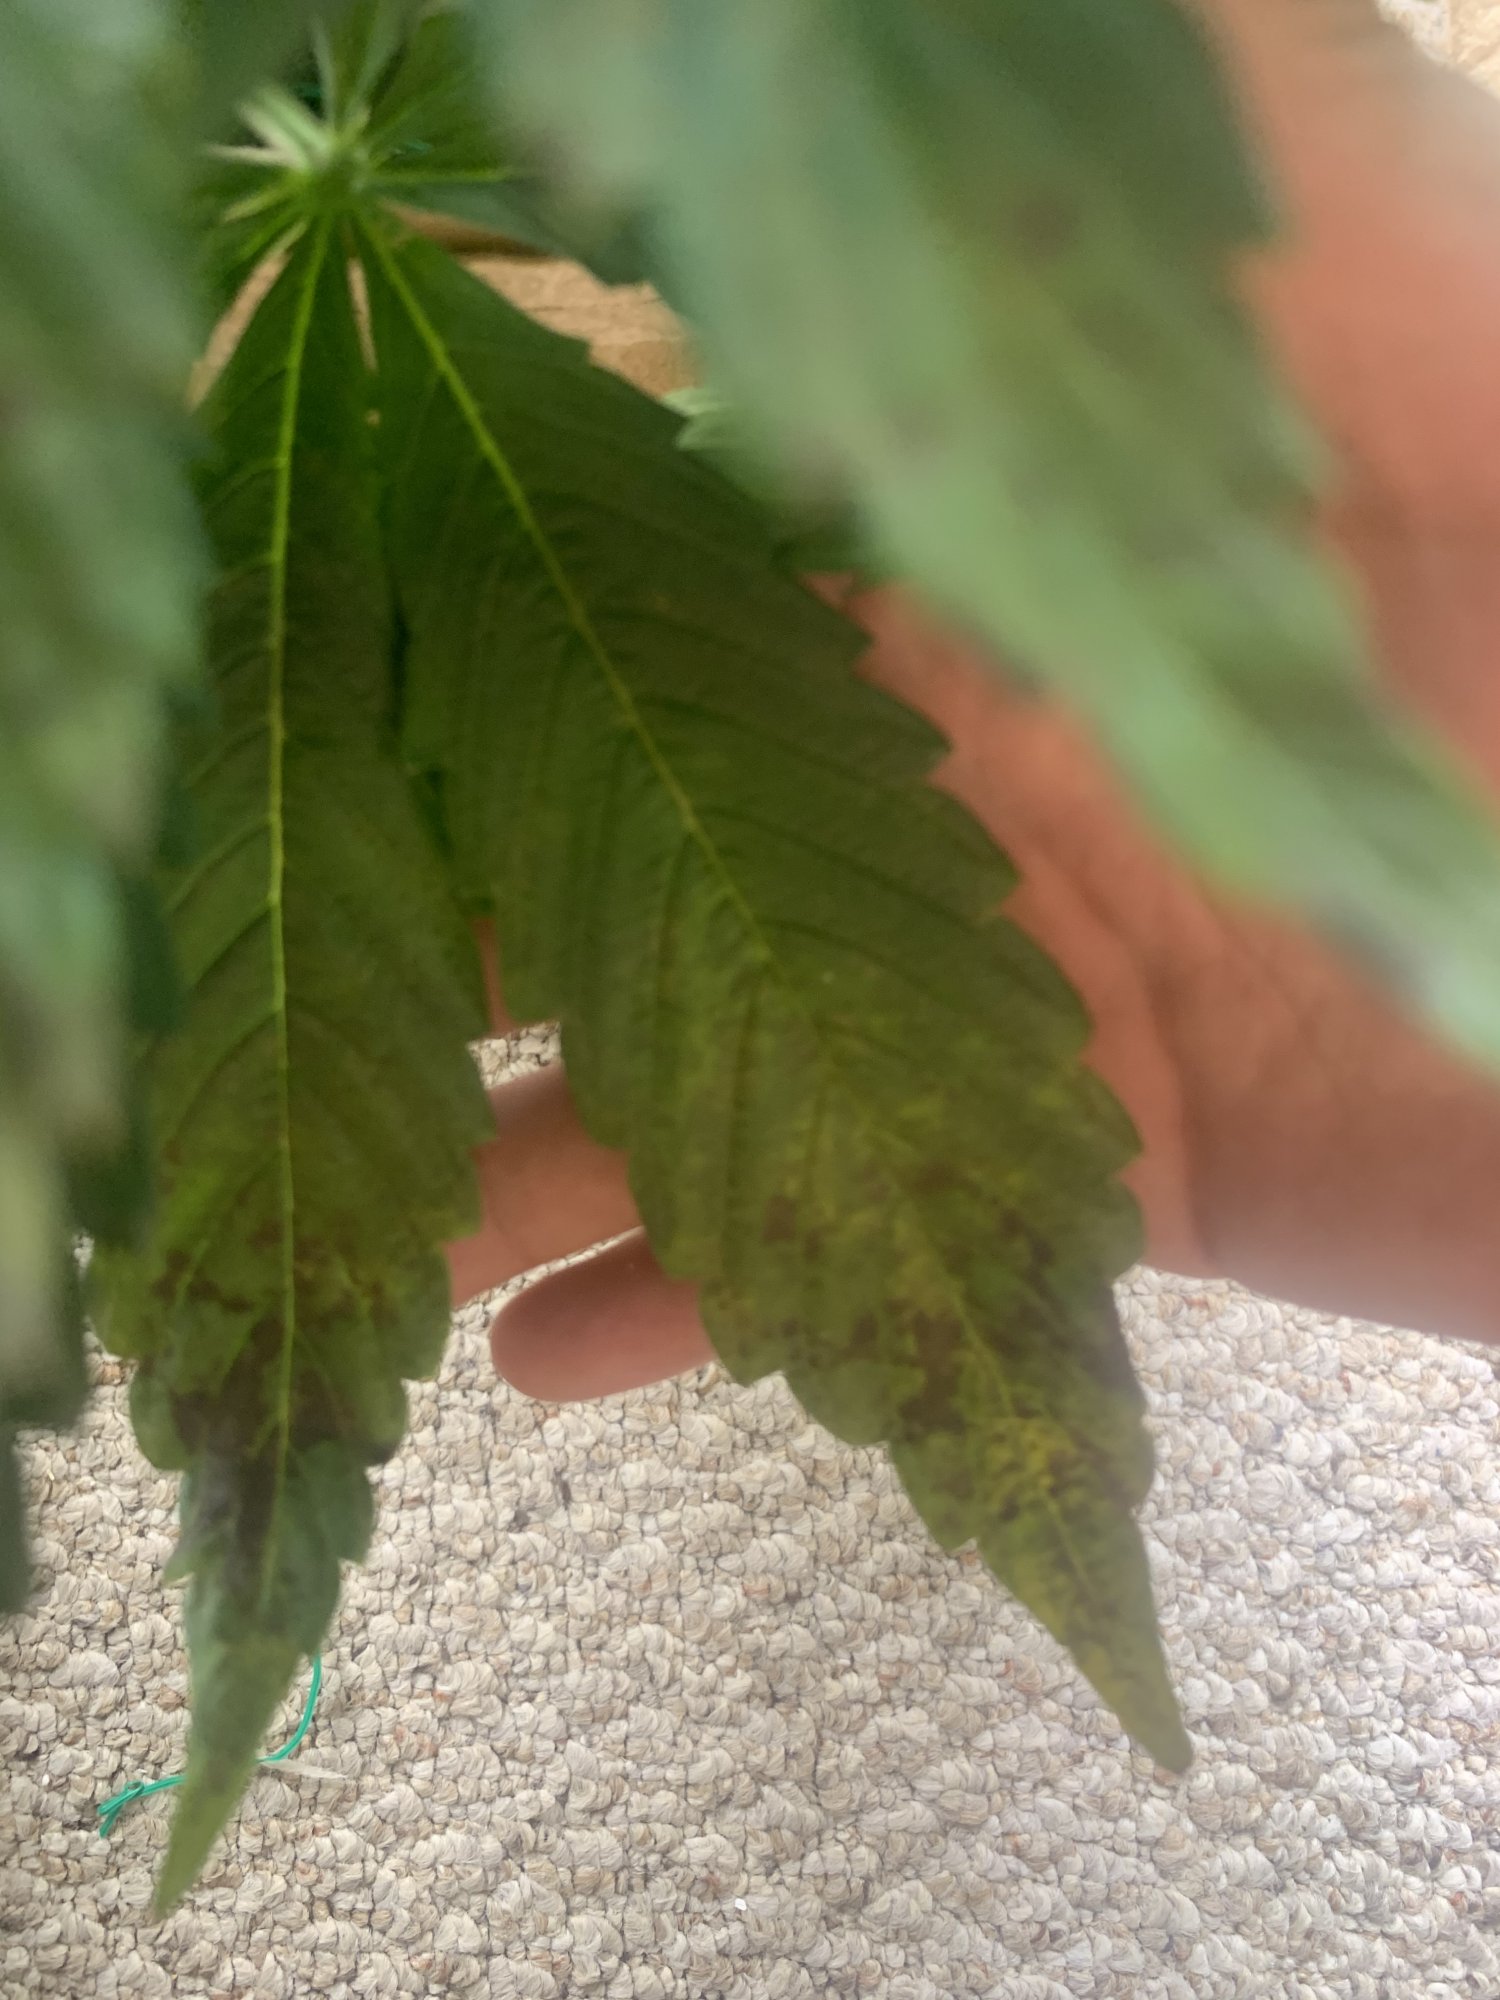 Leaf septoria or deficiencies